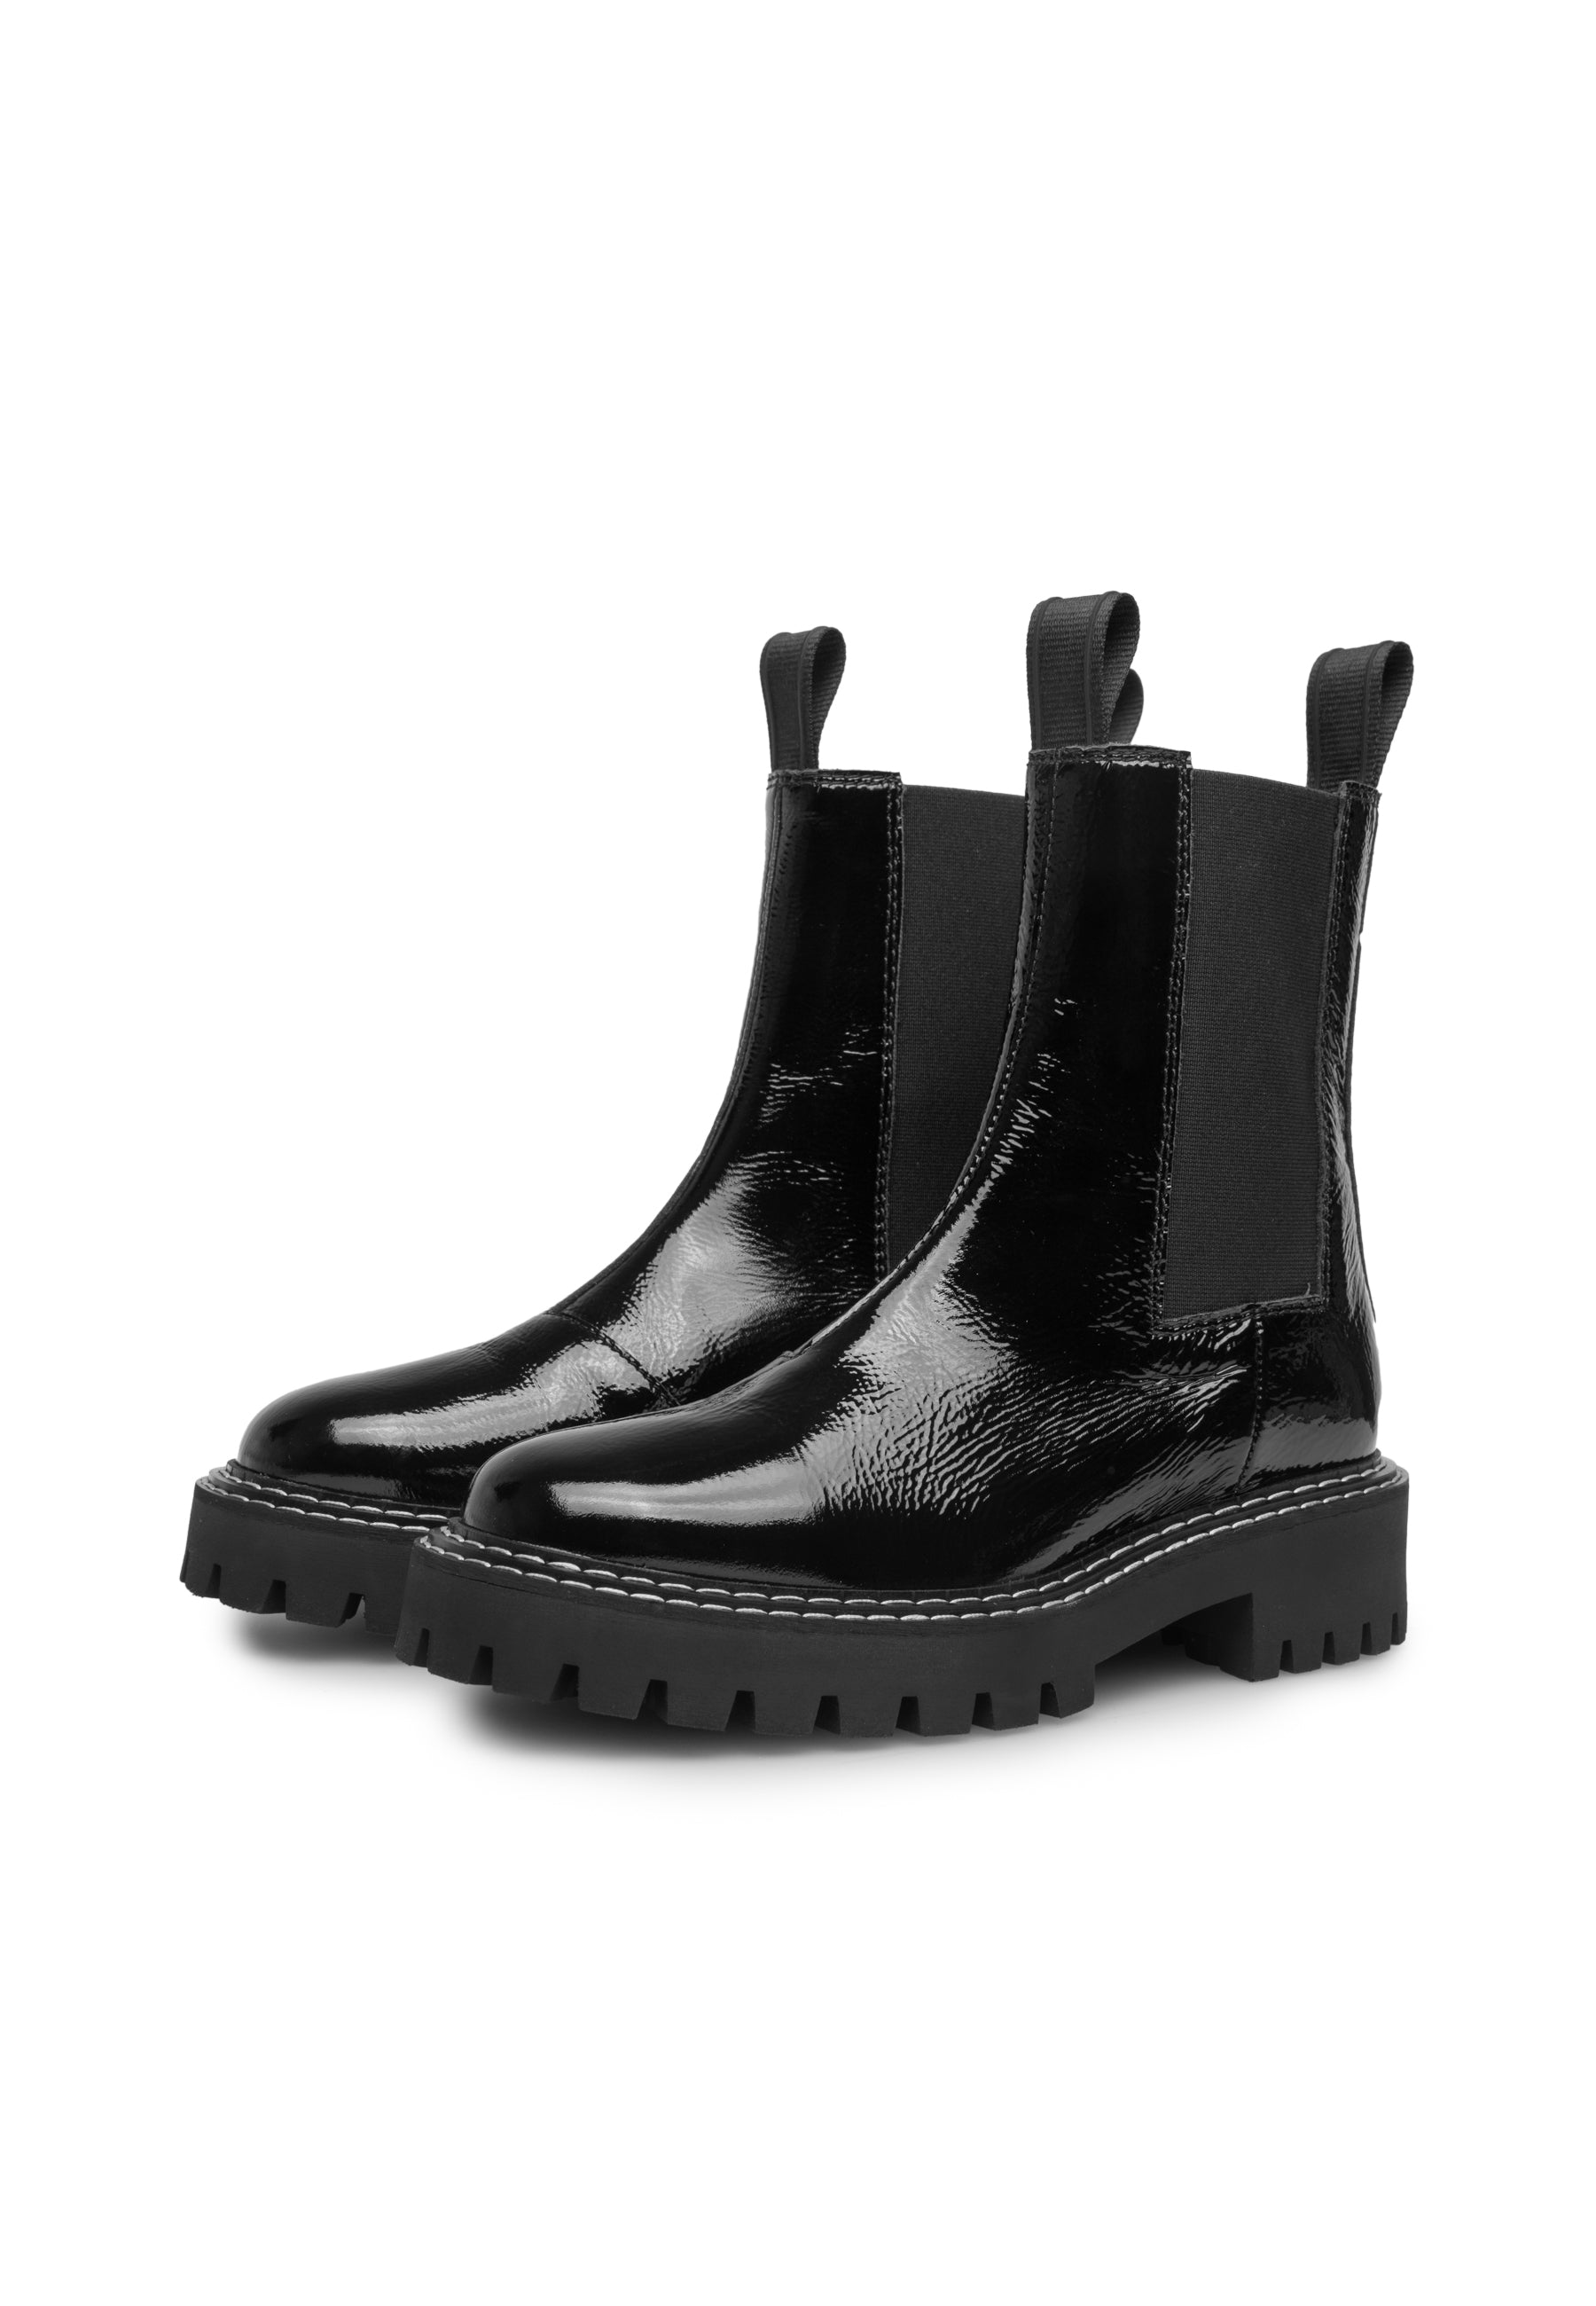 Daze Black Patent Leather Chelsea Boots LAST1677 - 2a